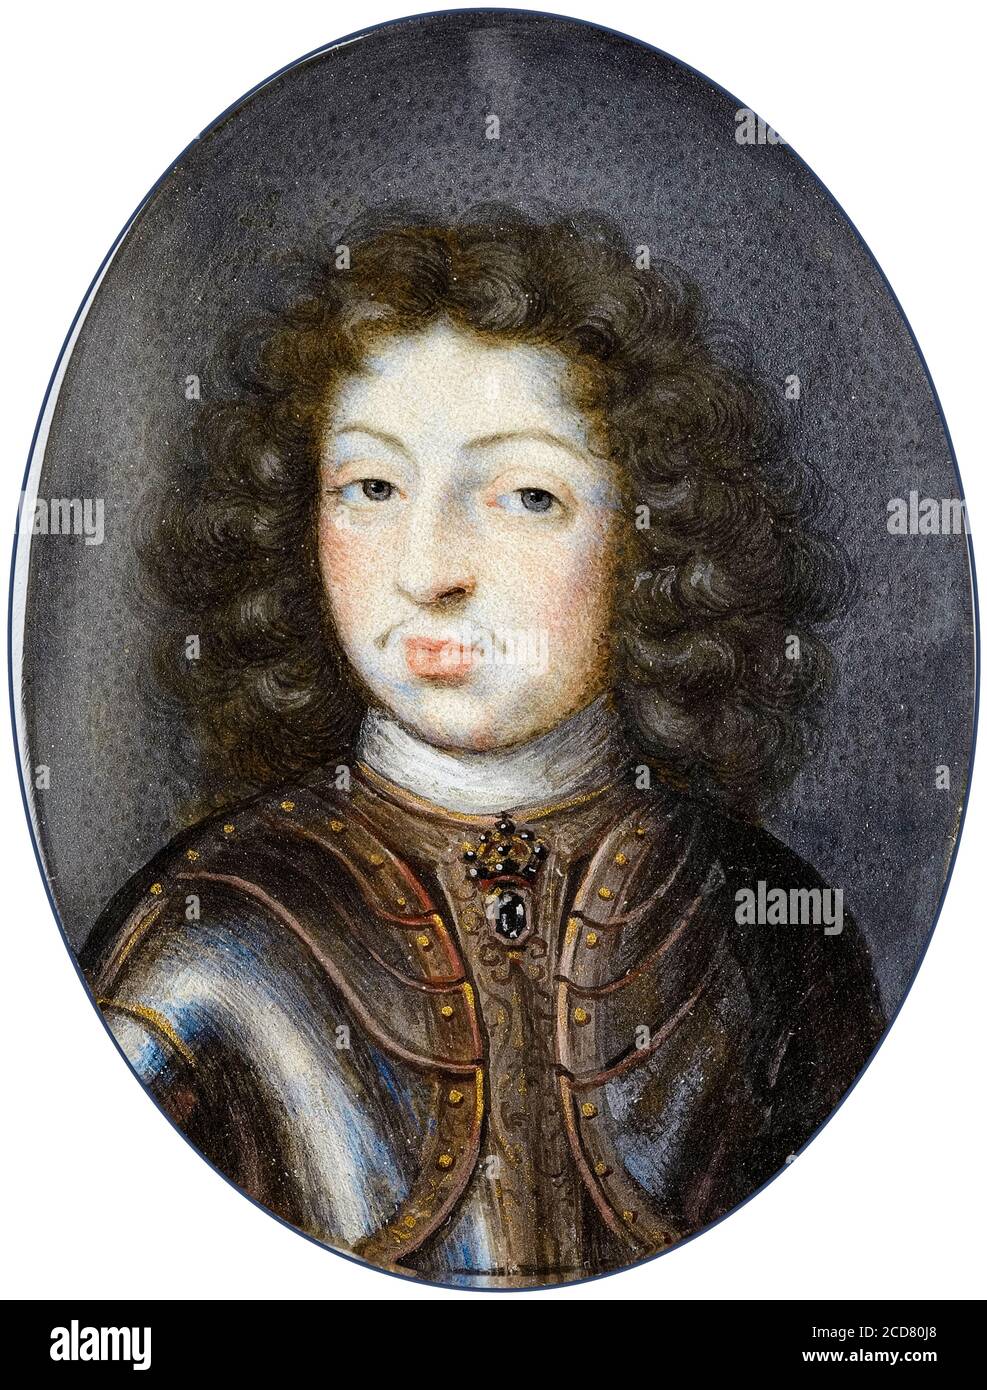 Charles XI (1655-1697), Rey de Suecia, miniatura retrato por Pierre Signac, 1672-1675 Foto de stock